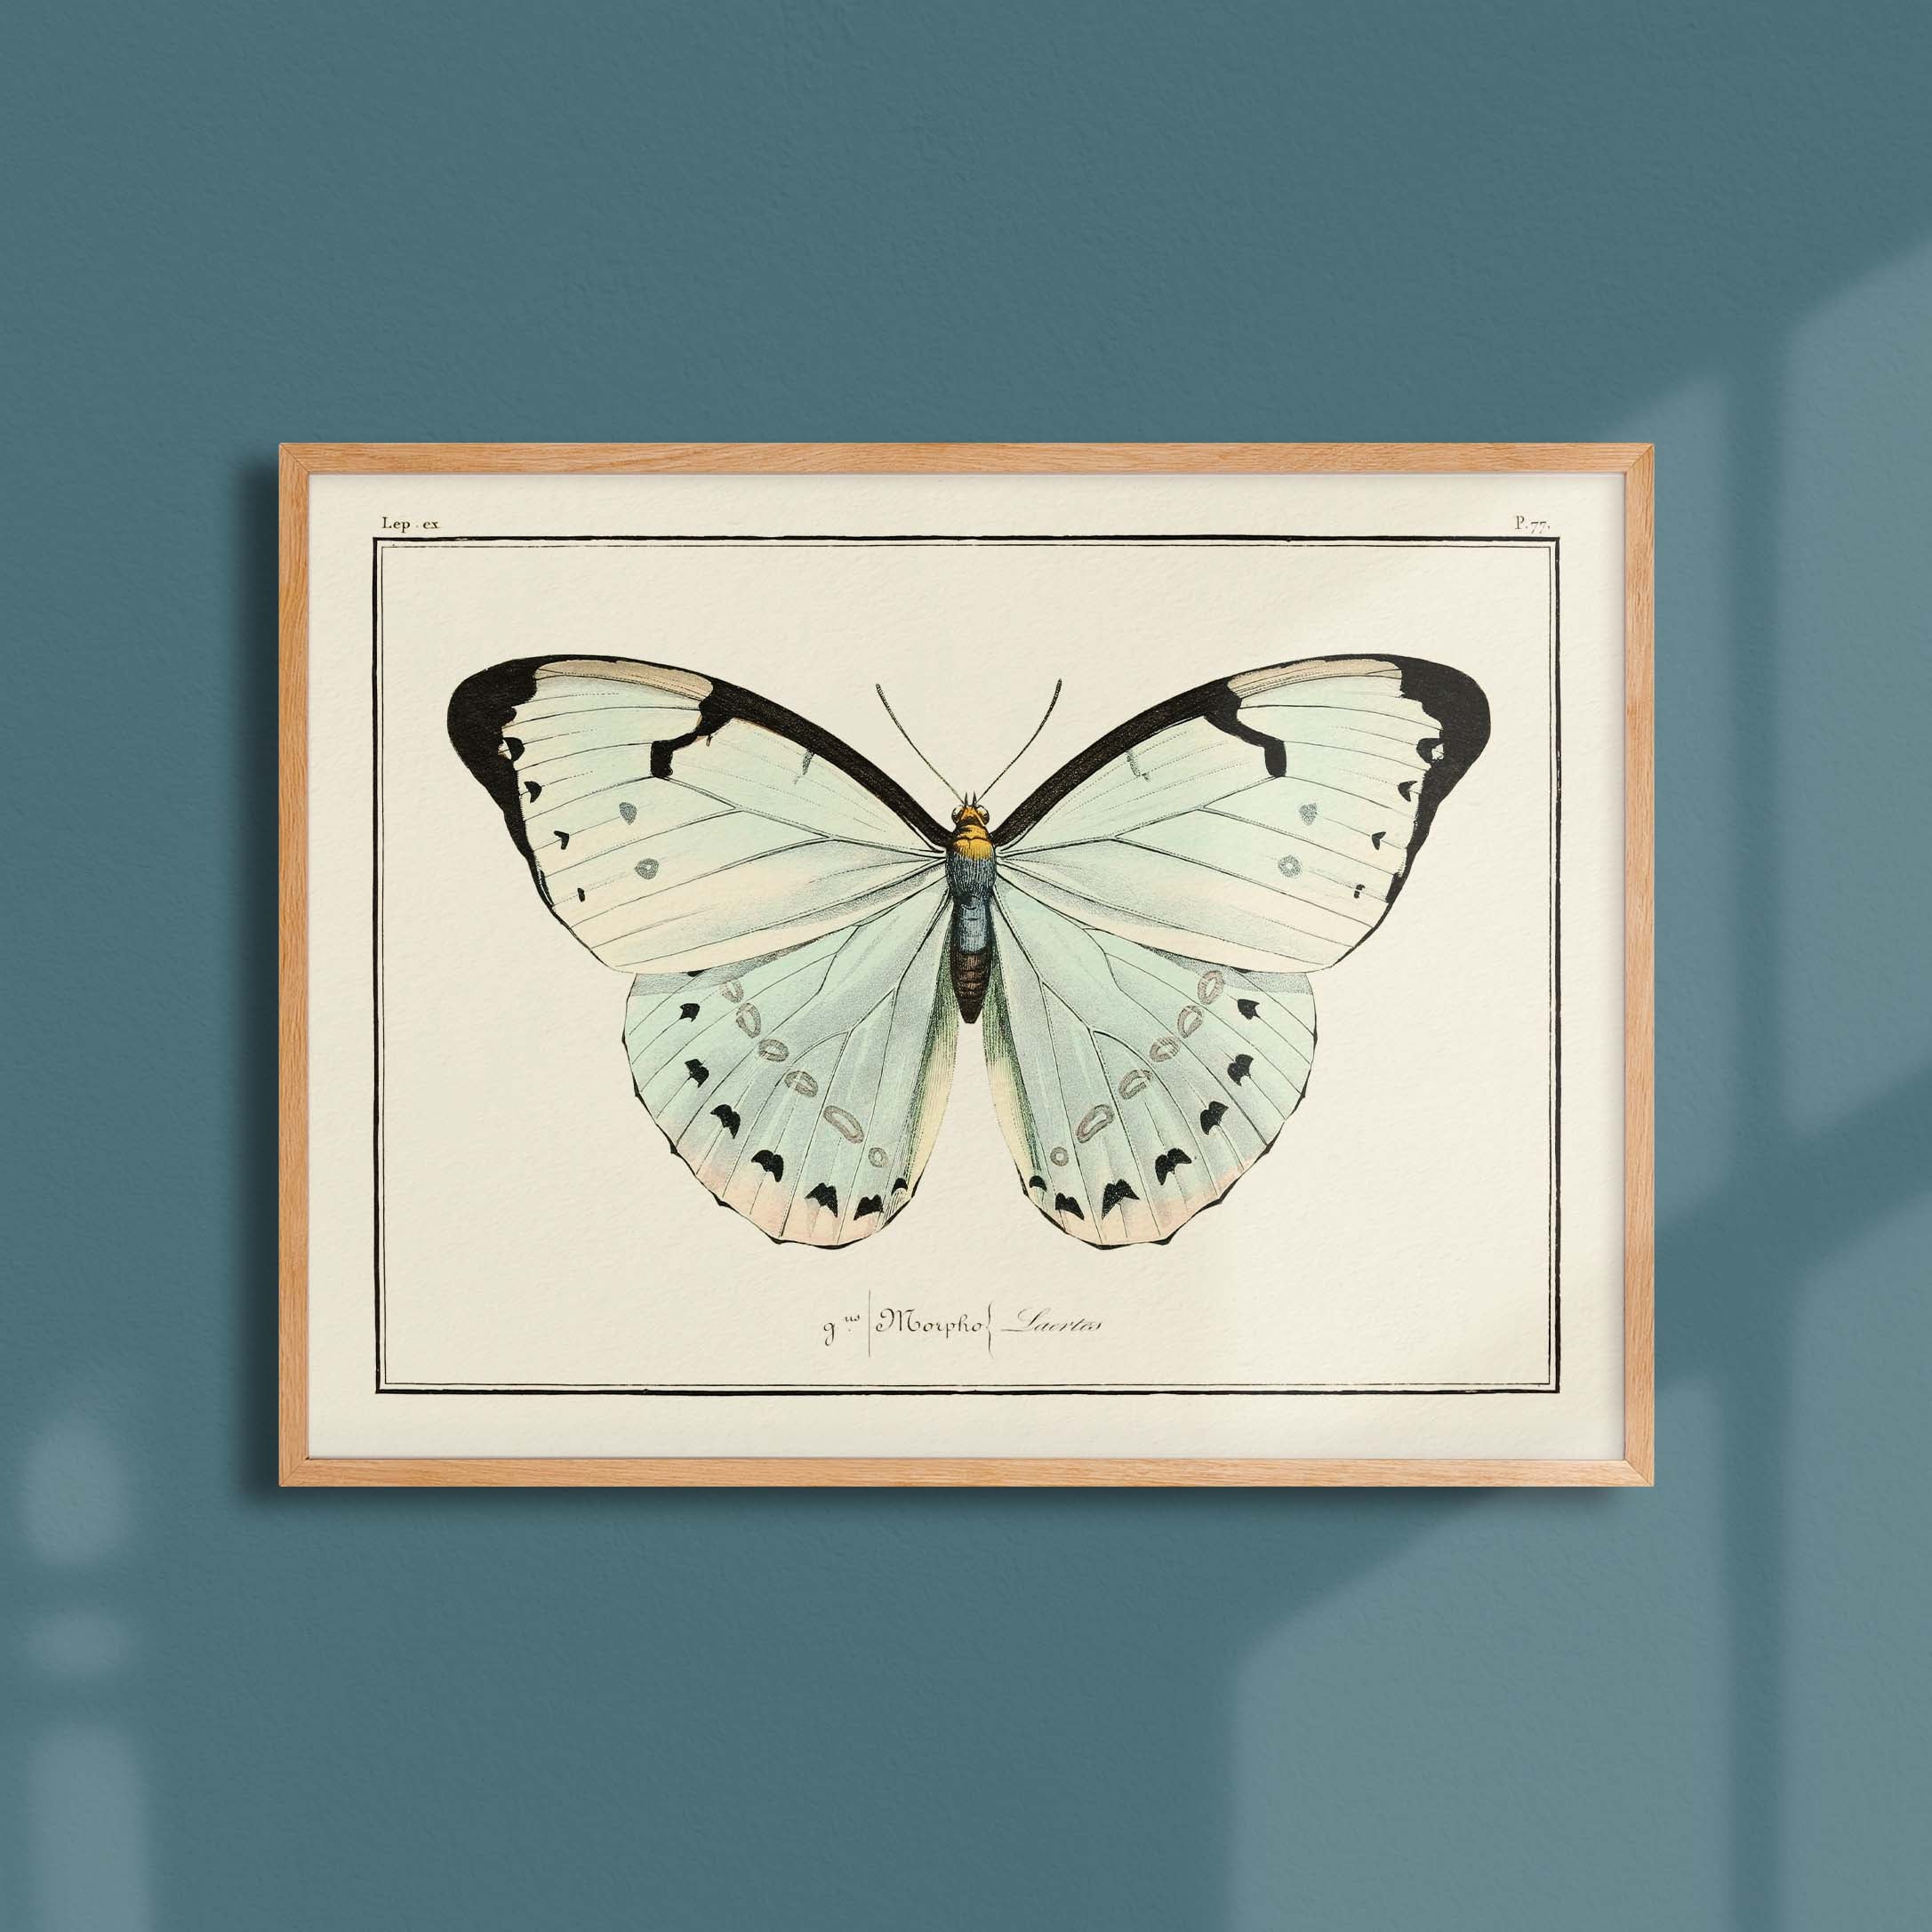 Planche d'entomologie Papillon - N°77-oneart.fr